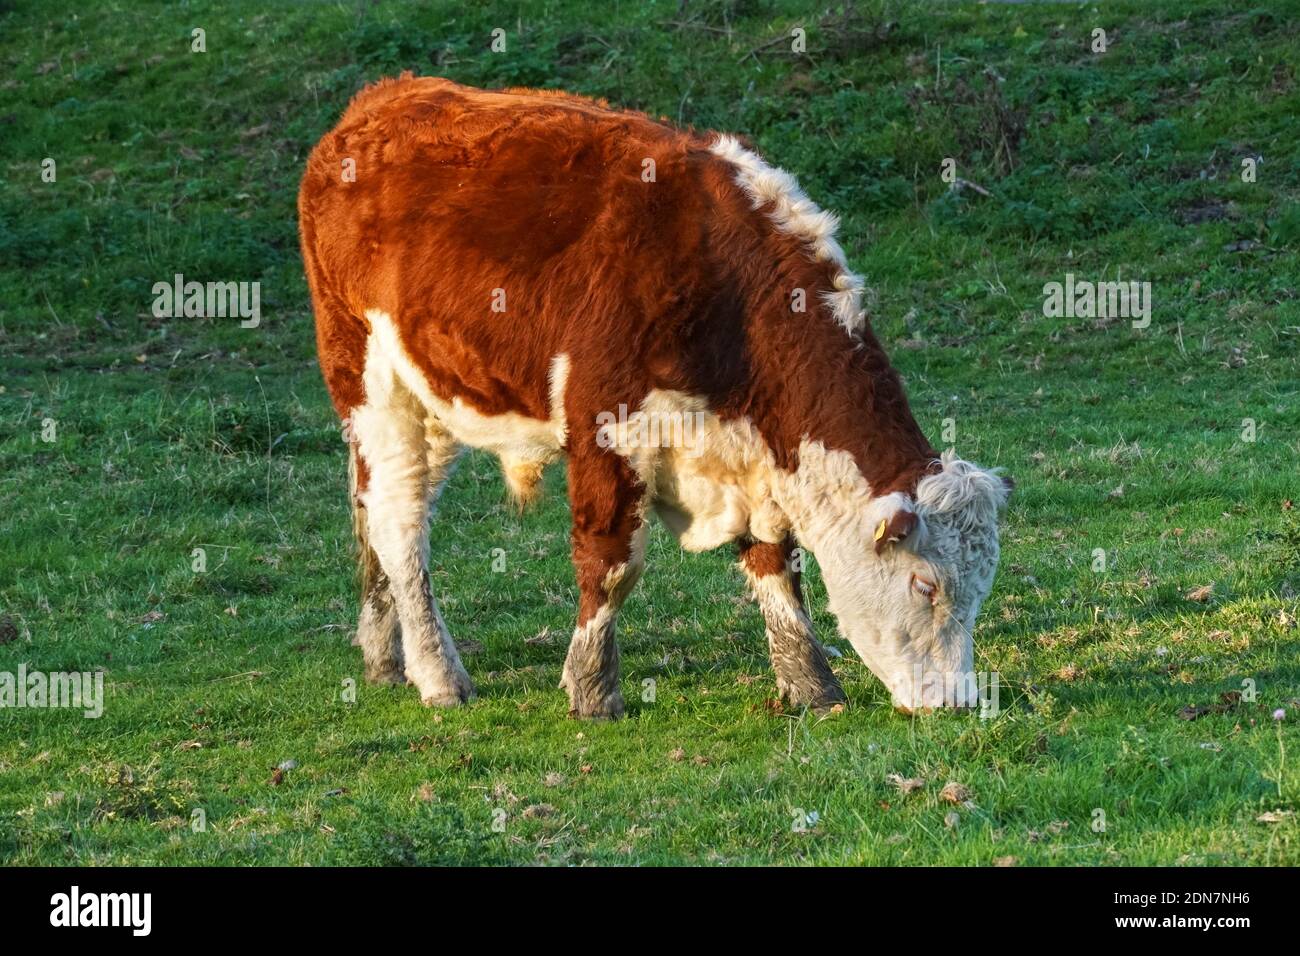 Hereford vache paître sur un pâturage, Cambridgeshire Angleterre Royaume-Uni Banque D'Images